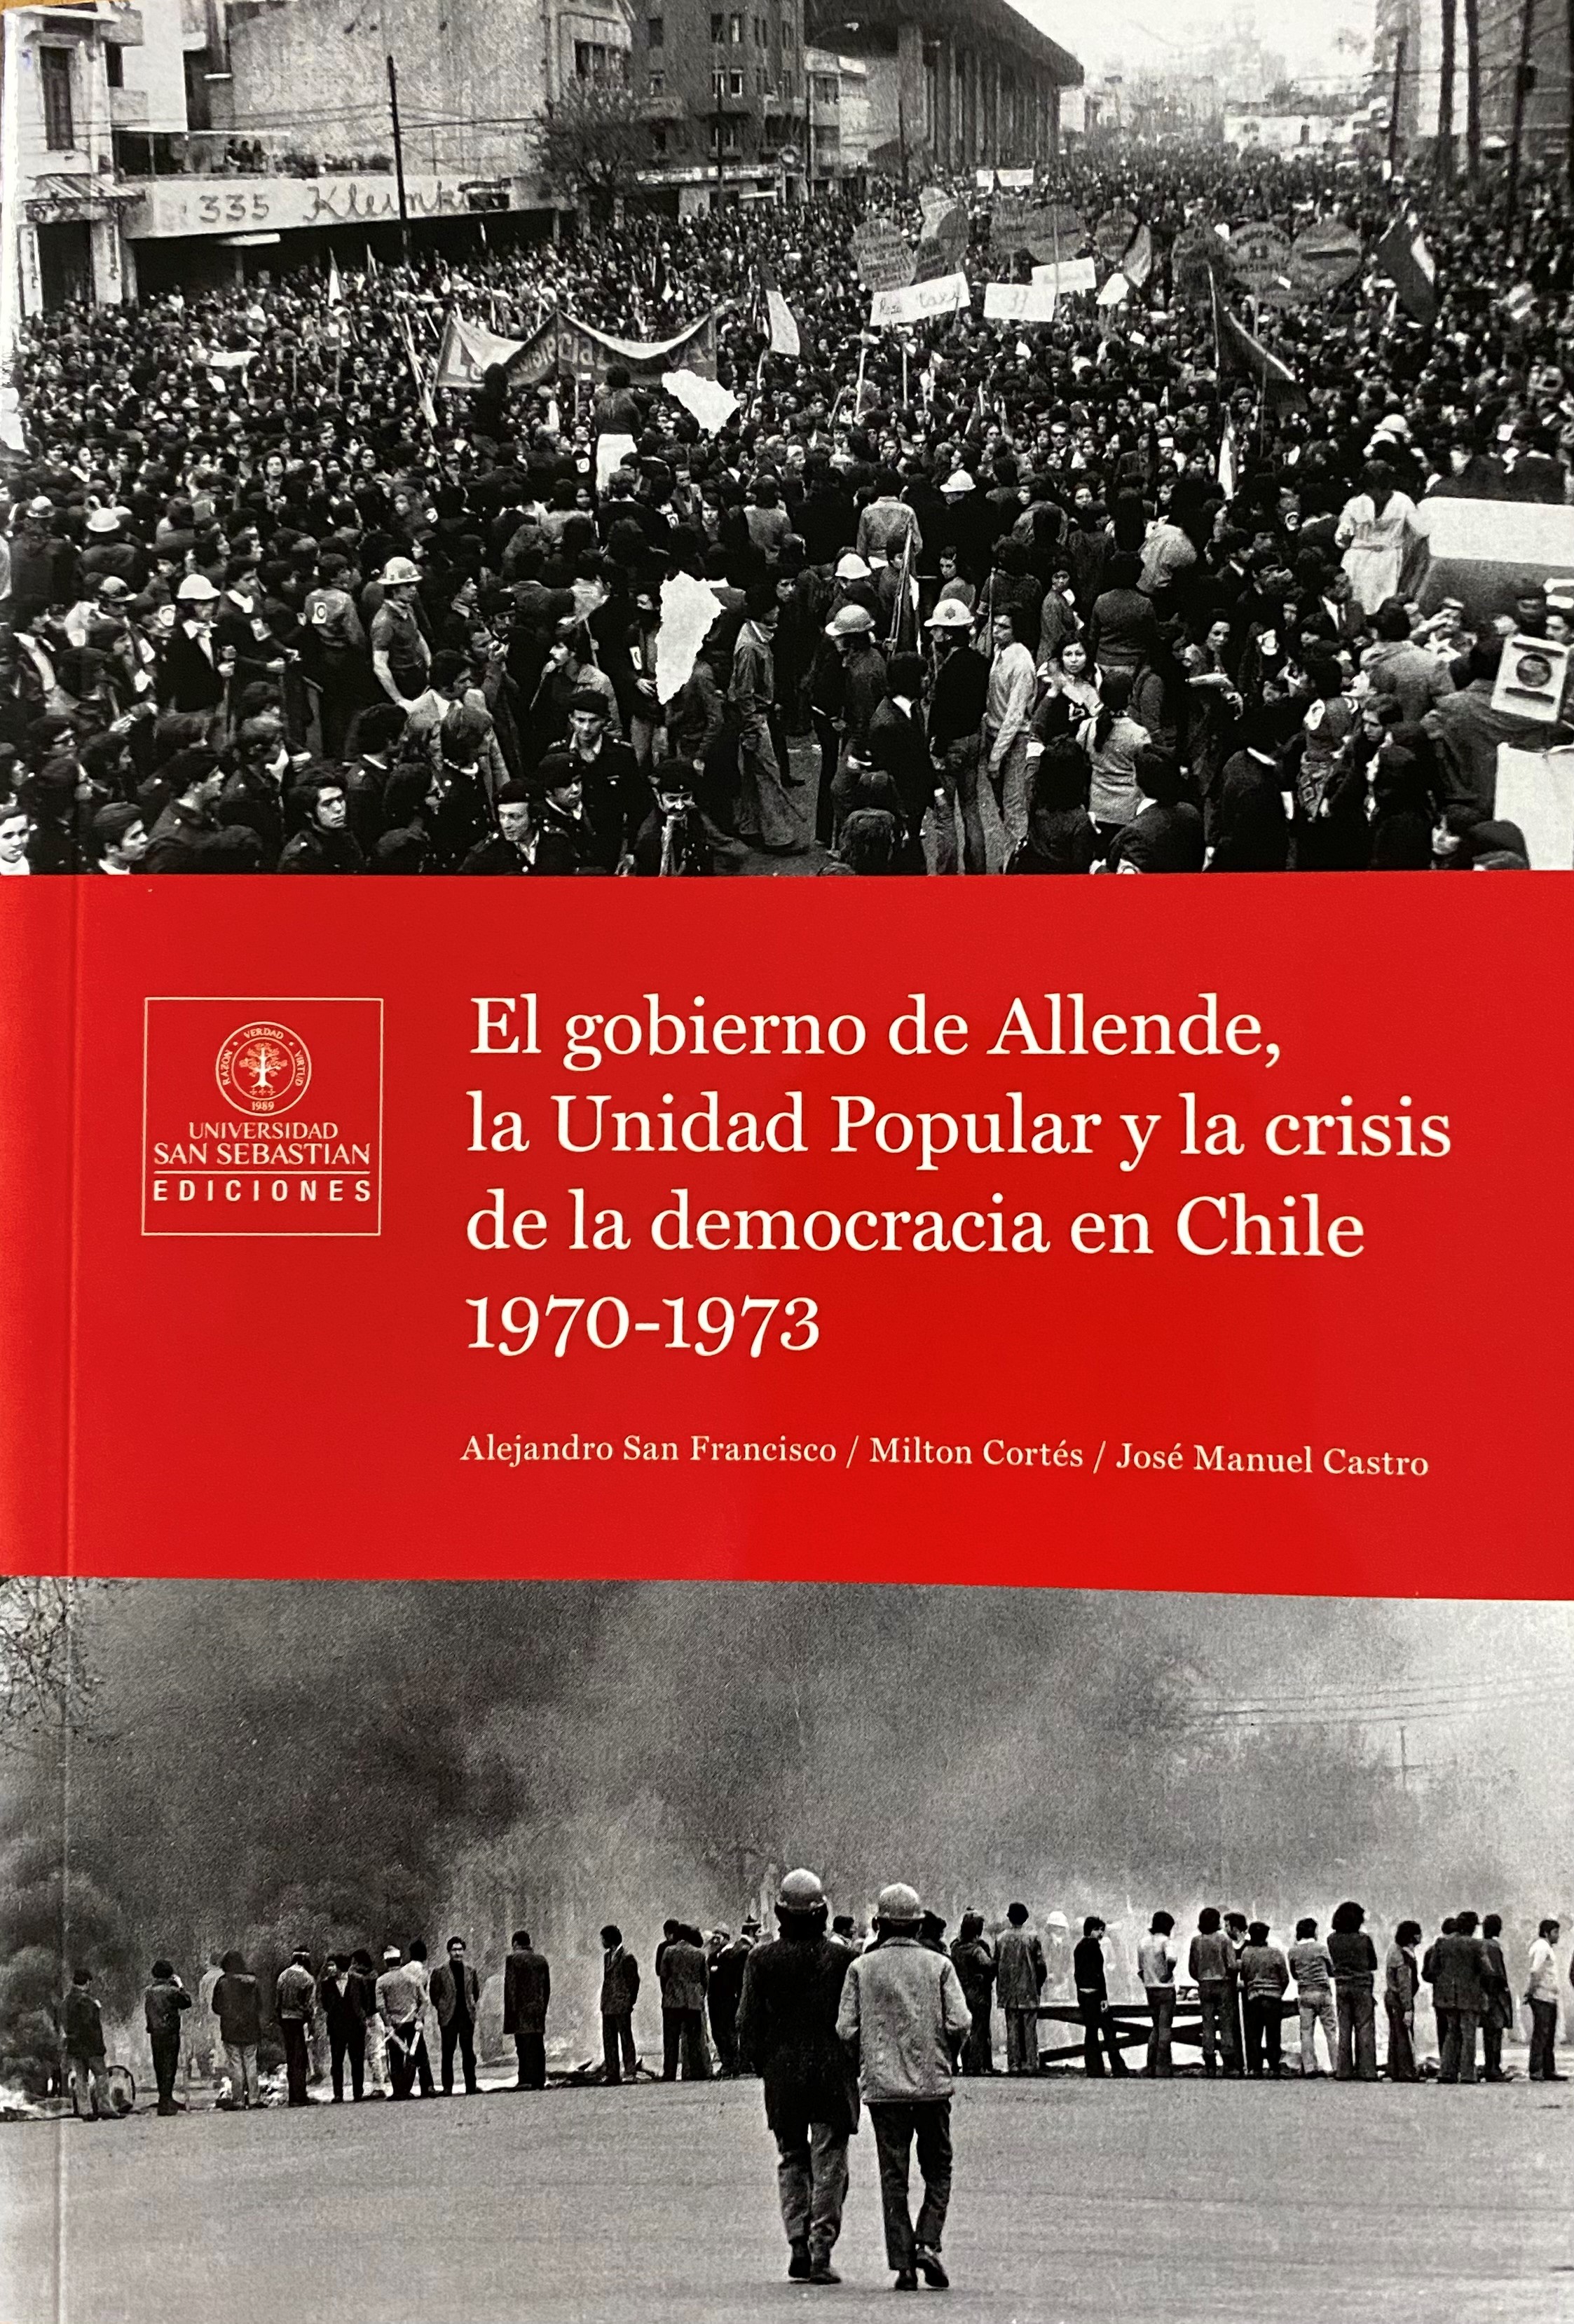 El gobierno de Allende, la Unidad Popular y la crisis de la democracia en Chile 1970-1973